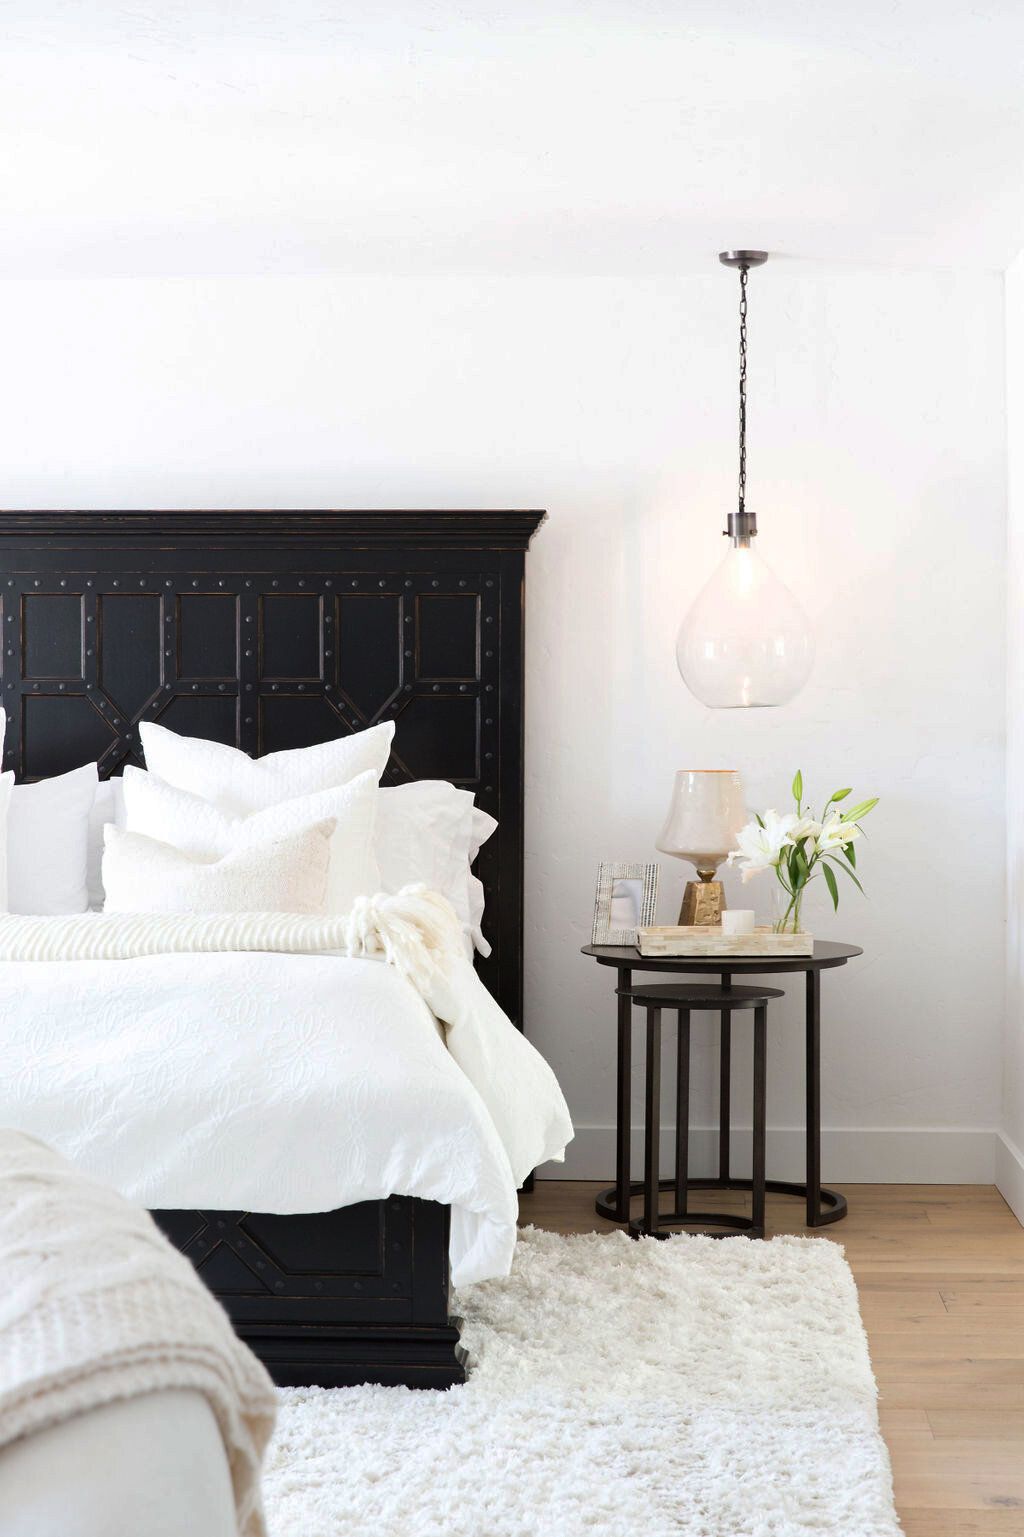 Khung giường màu đen vững chãi, bộ chăn ga gối màu trắng sạch sẽ kết hợp cùng đèn thả trần chiếu sáng tạo cái nhìn tươi mới và ấm áp cho không gian thư giãn.